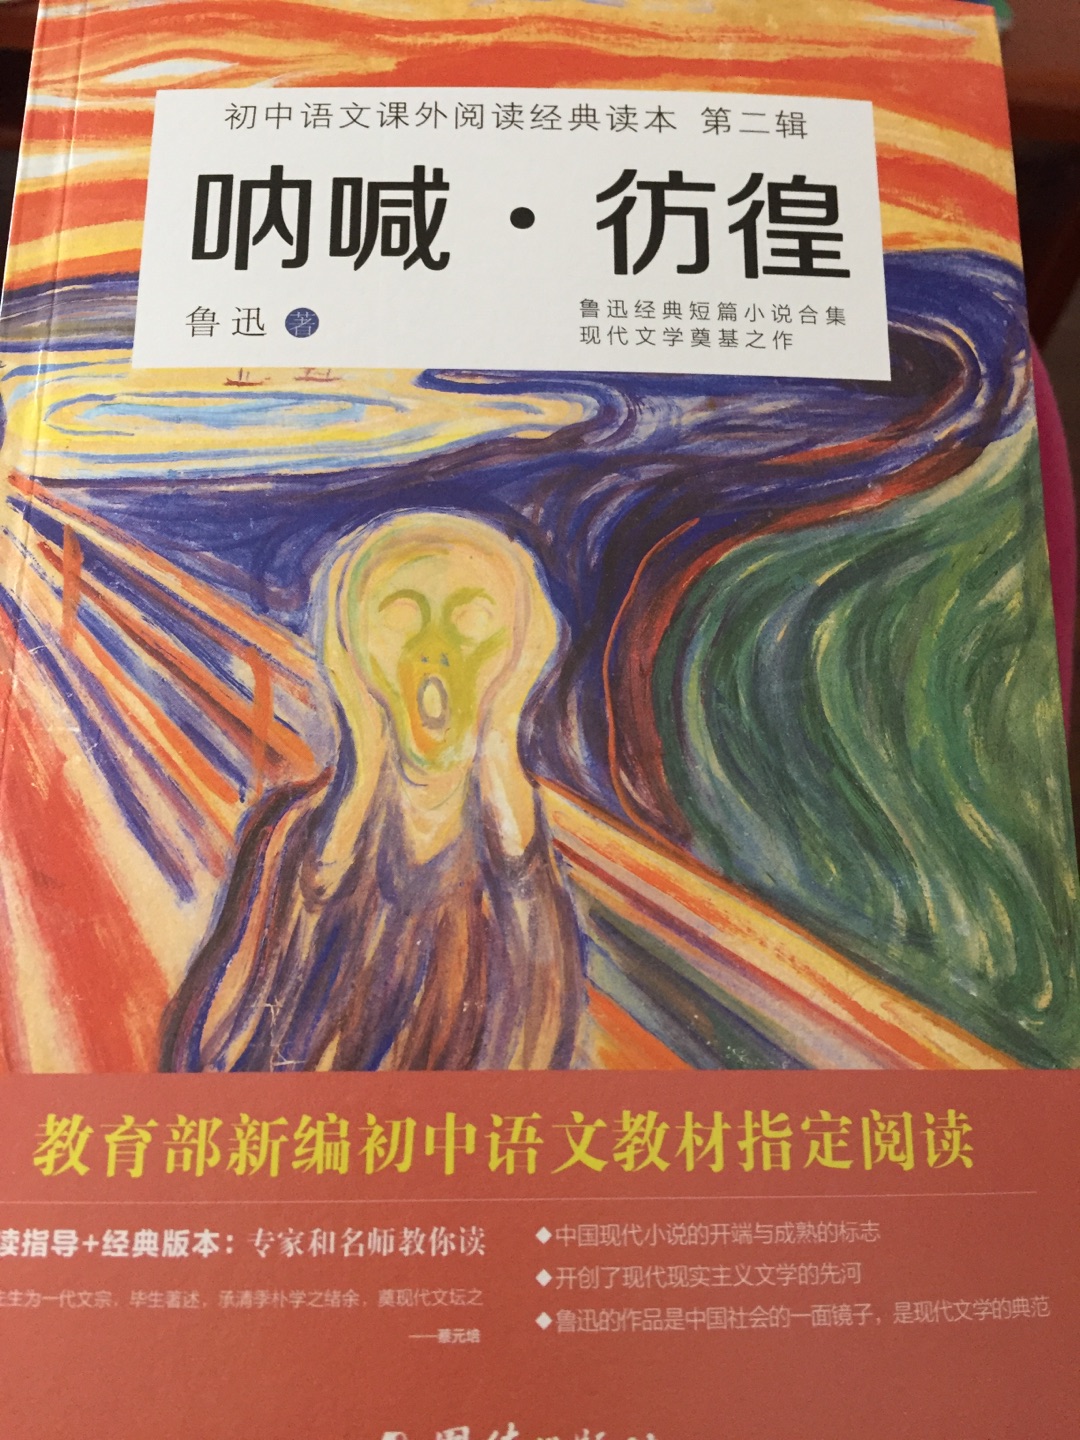 不读不是中国人系列，这个版本的封面做的很讨巧呢，非常好，了解那个特殊时期的中国，从鲁迅的文章开始！